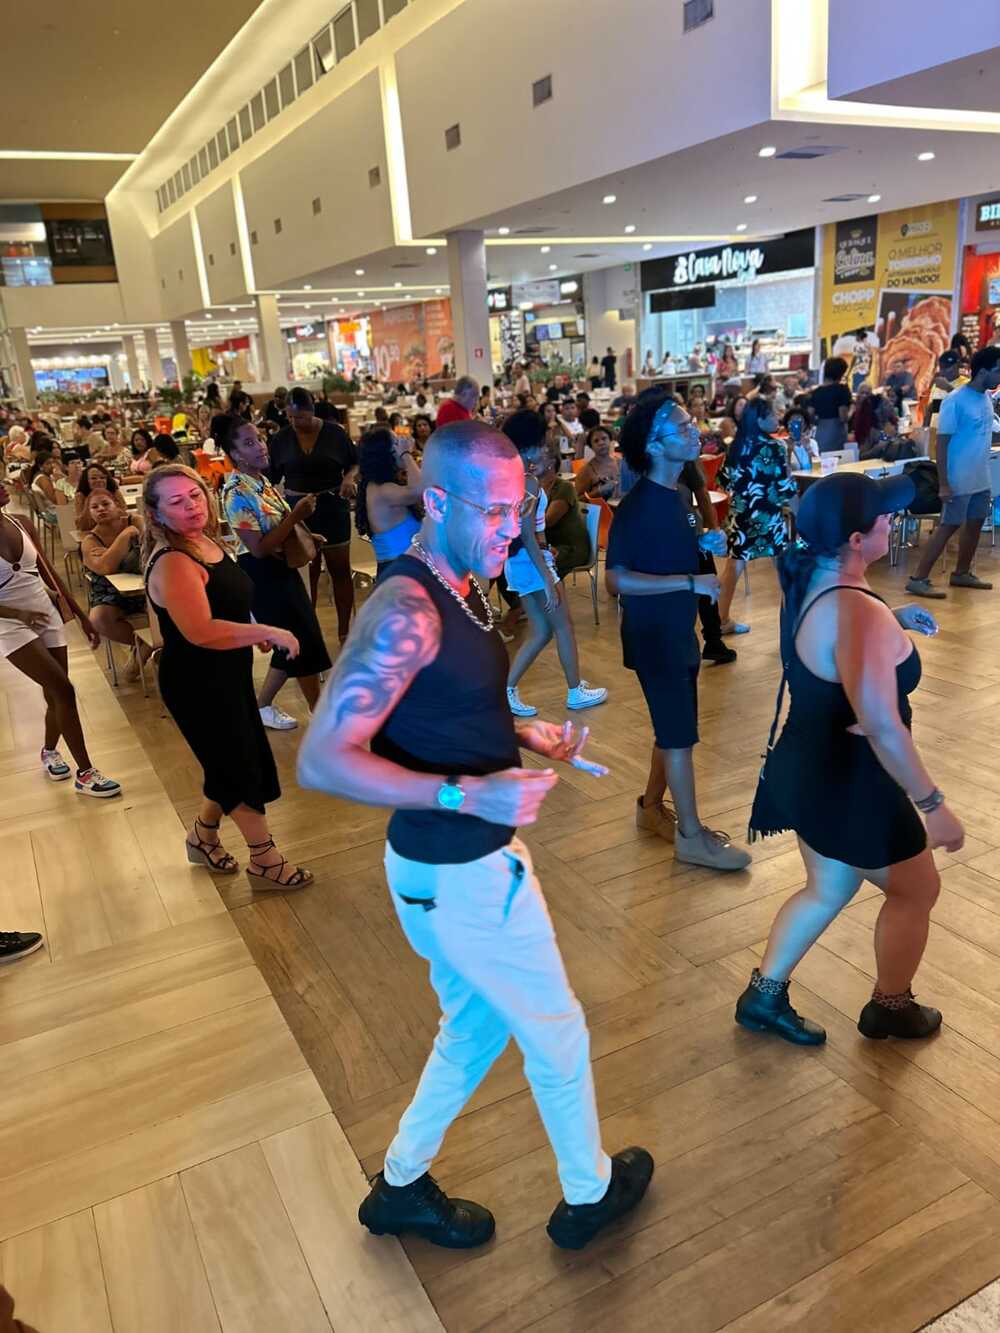 Bailes charme e de dança de salão agitam o Shopping Nova Iguaçu durante a programação de aniversário